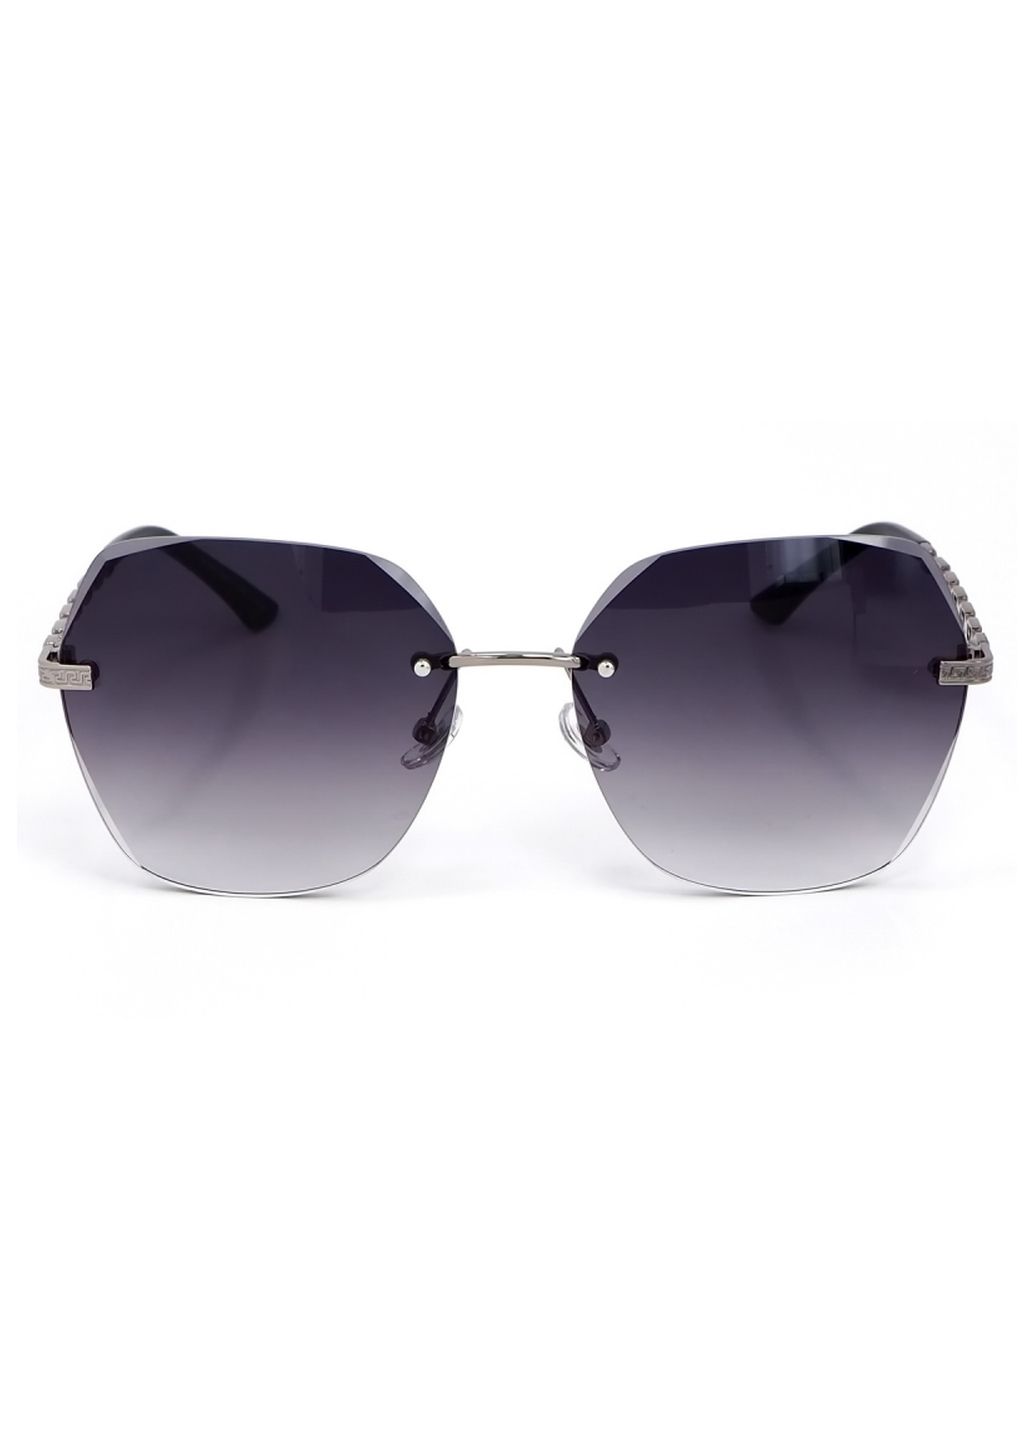 Купить Женские солнцезащитные очки Merlini с поляризацией S31831 117088 - Серый в интернет-магазине